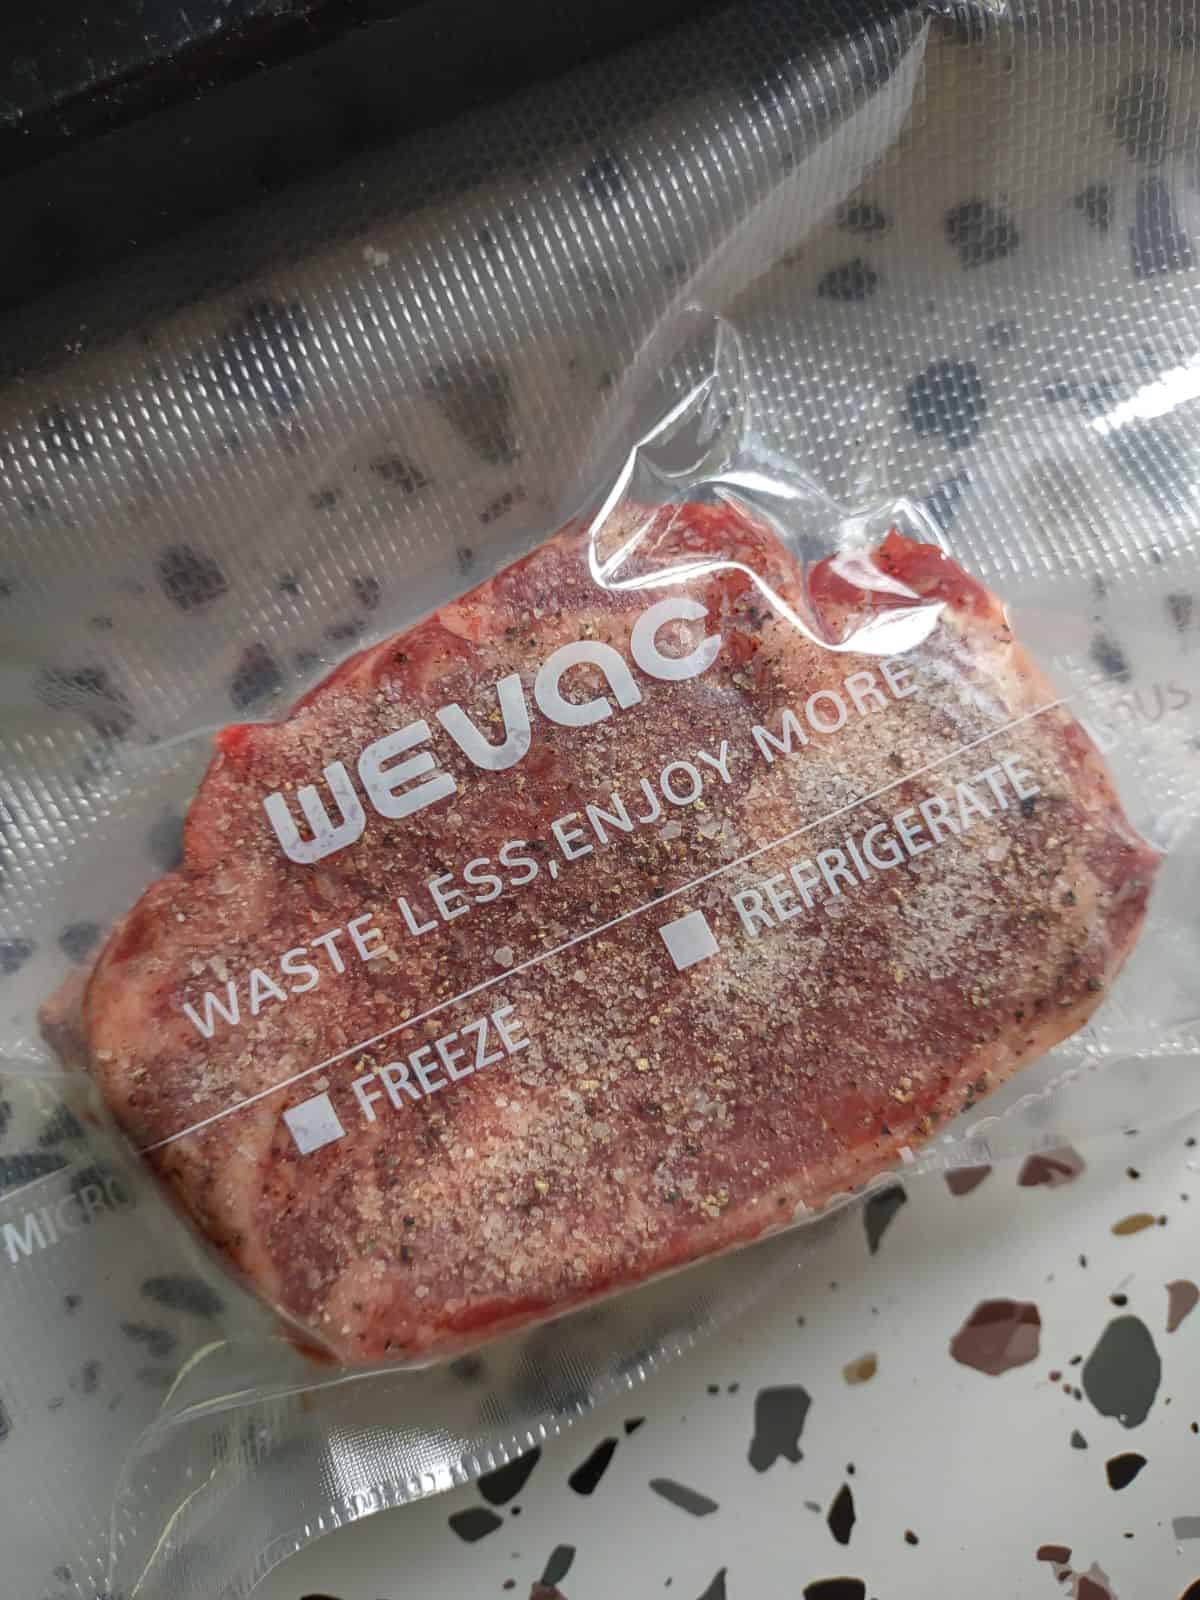 A Chuck Eye steak sealed in a WeVac bag.